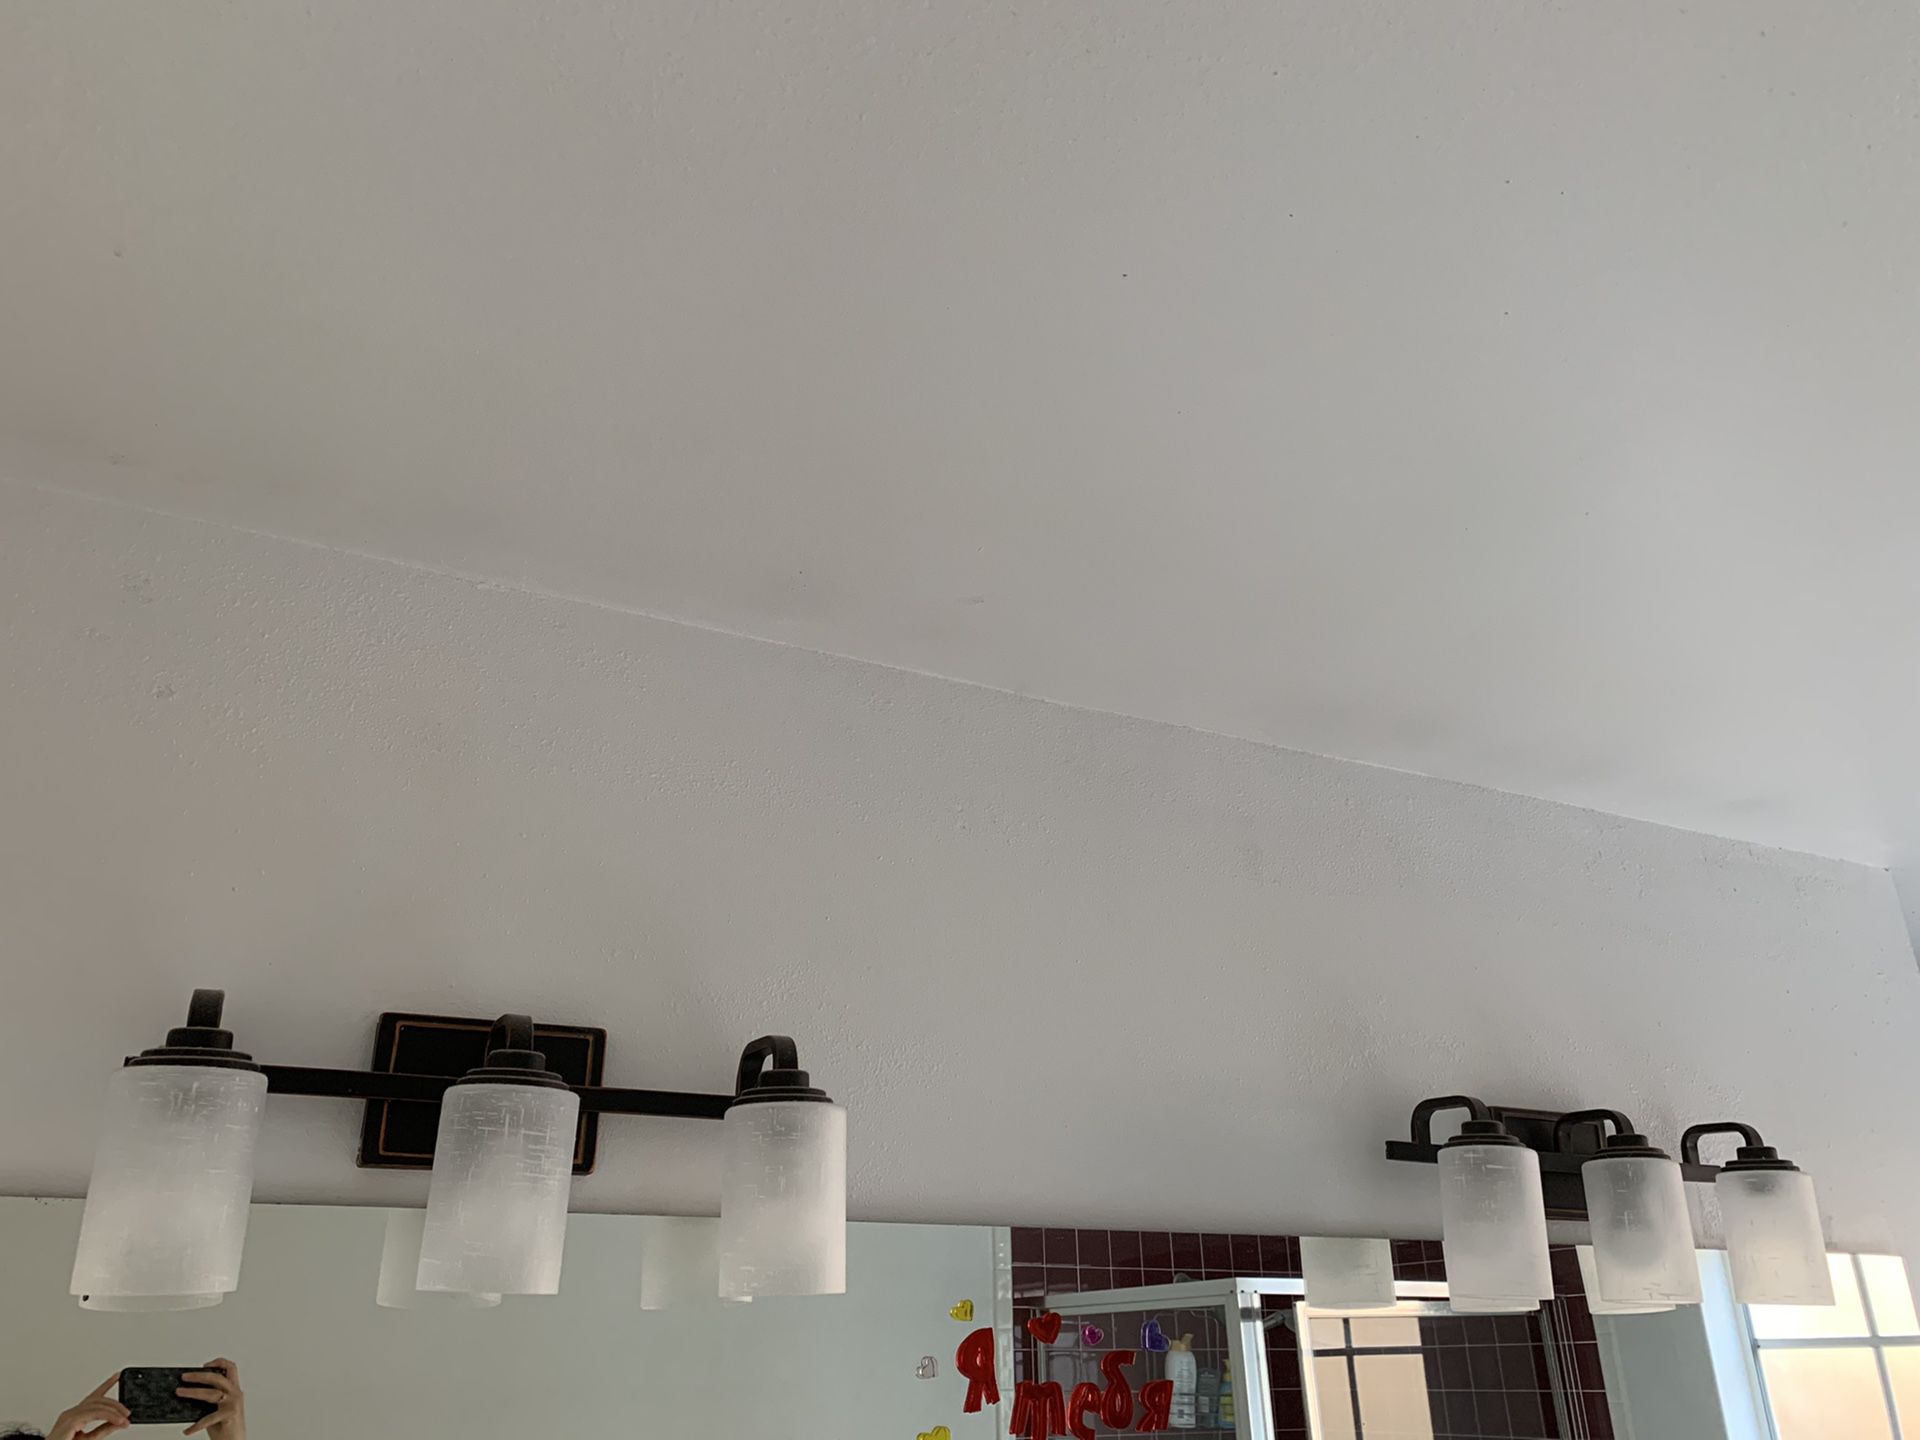 2 Bathroom lighting fixtures